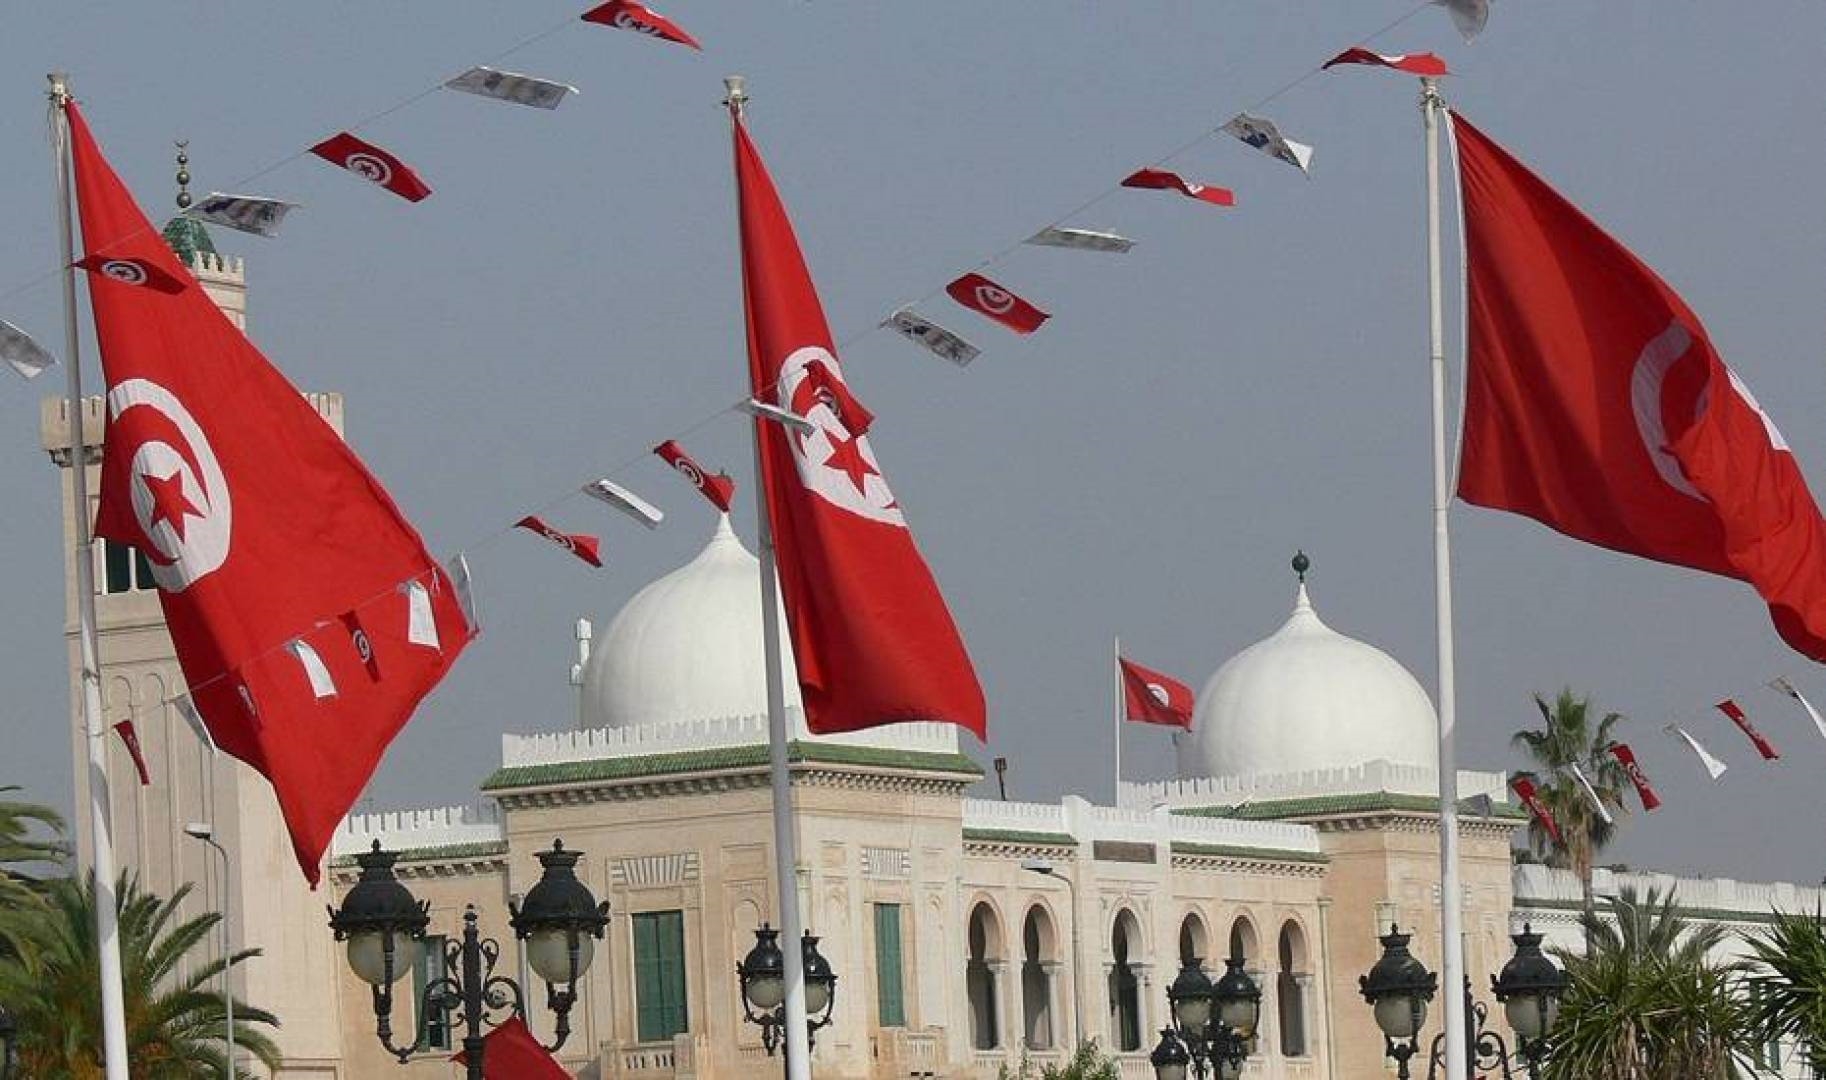 إنهاء إلحاق القضاة بالحكومة ورئاسة الجمهورية في تونس